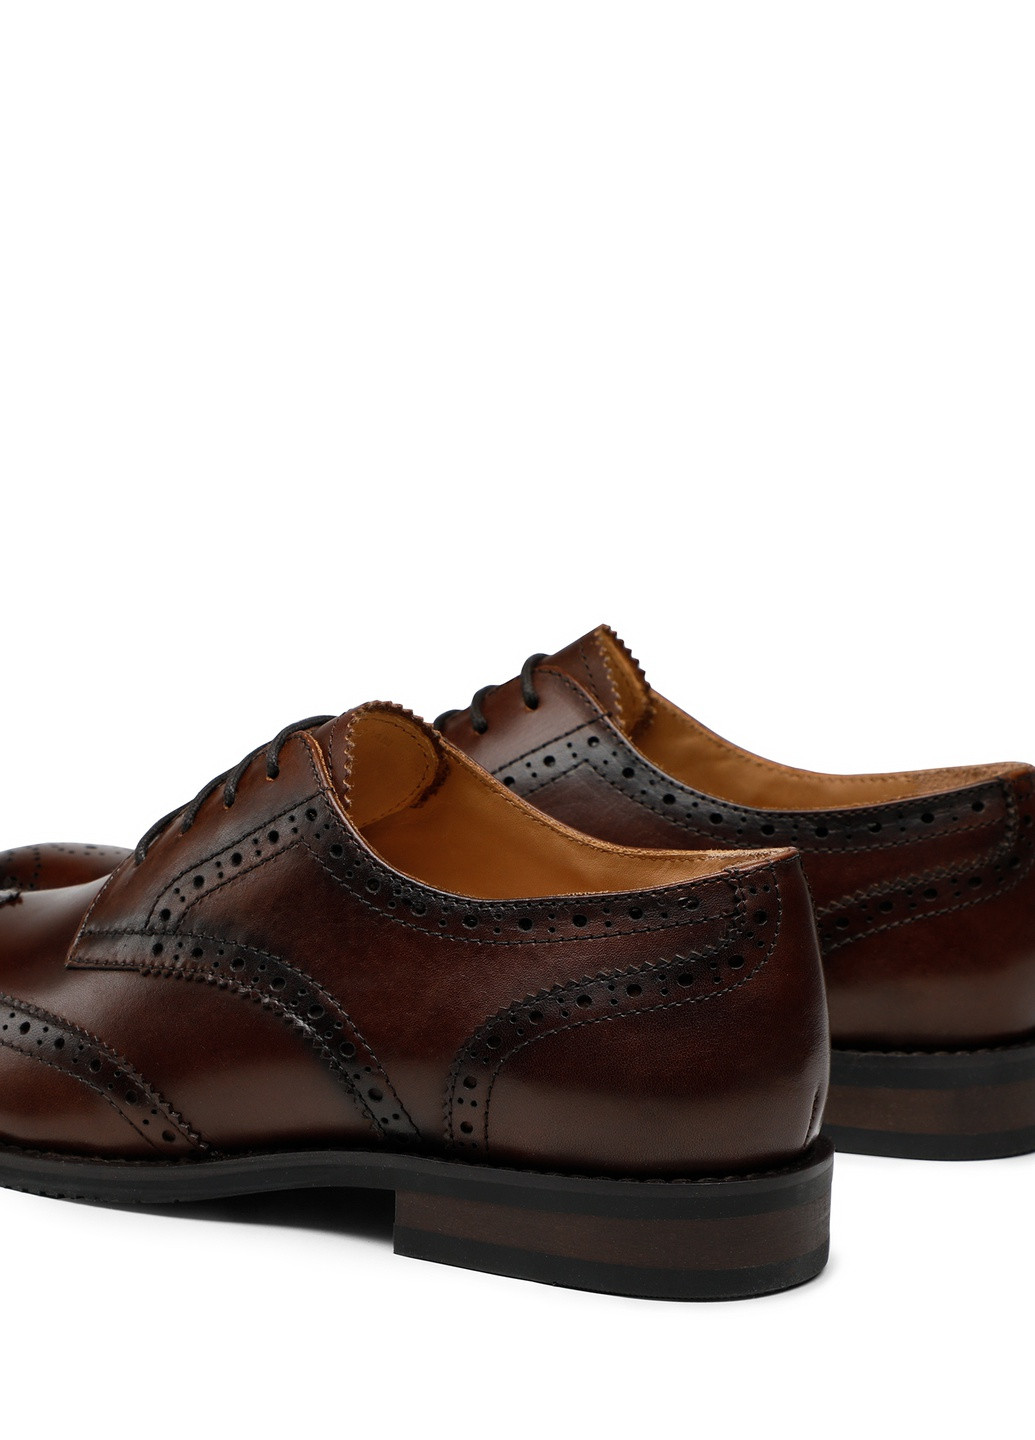 Туфлі FABIANO-01 122AM Gino Rossi однотонні темно-коричневі кежуали